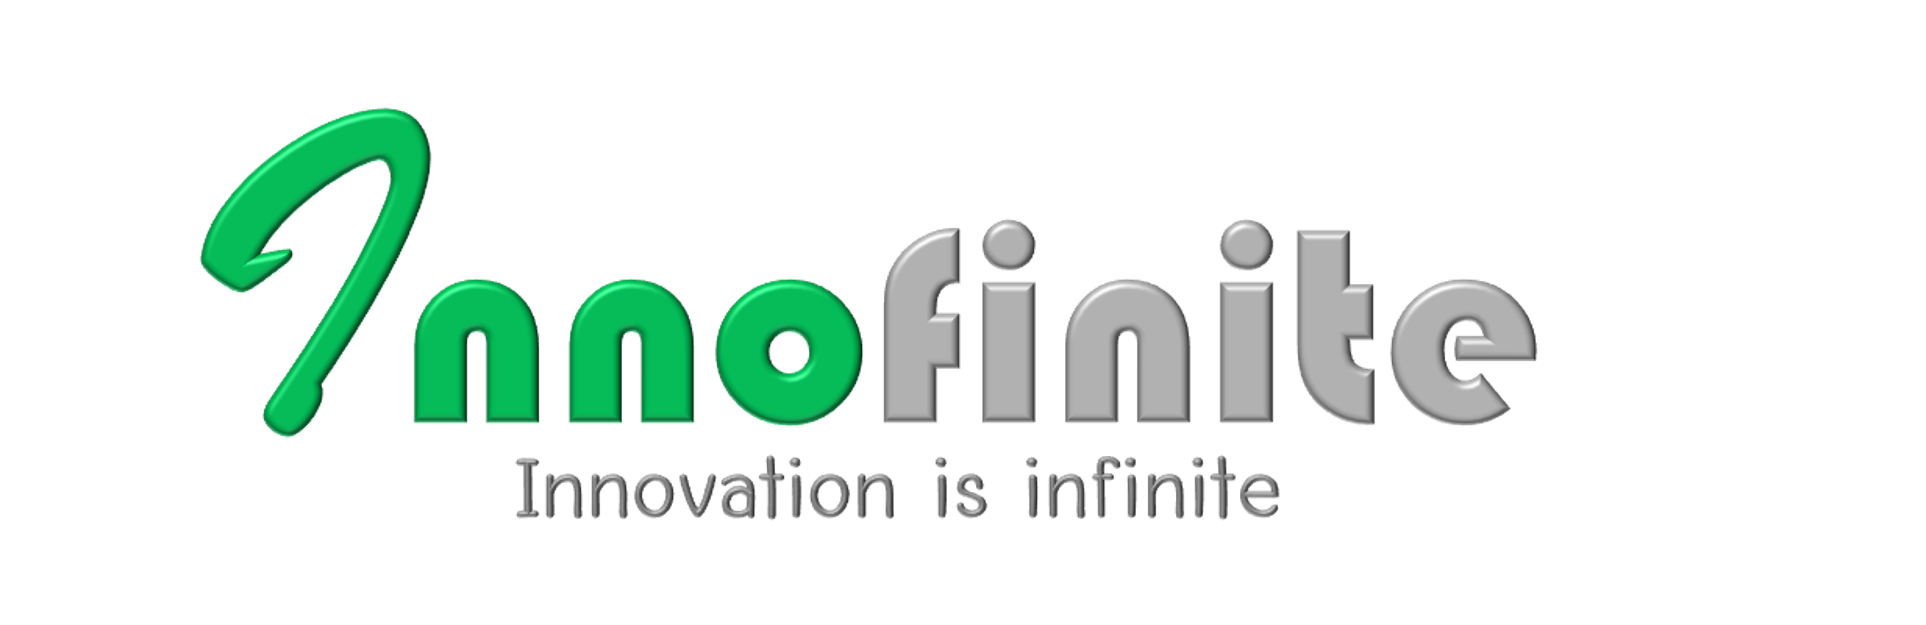 Innofinite Logo